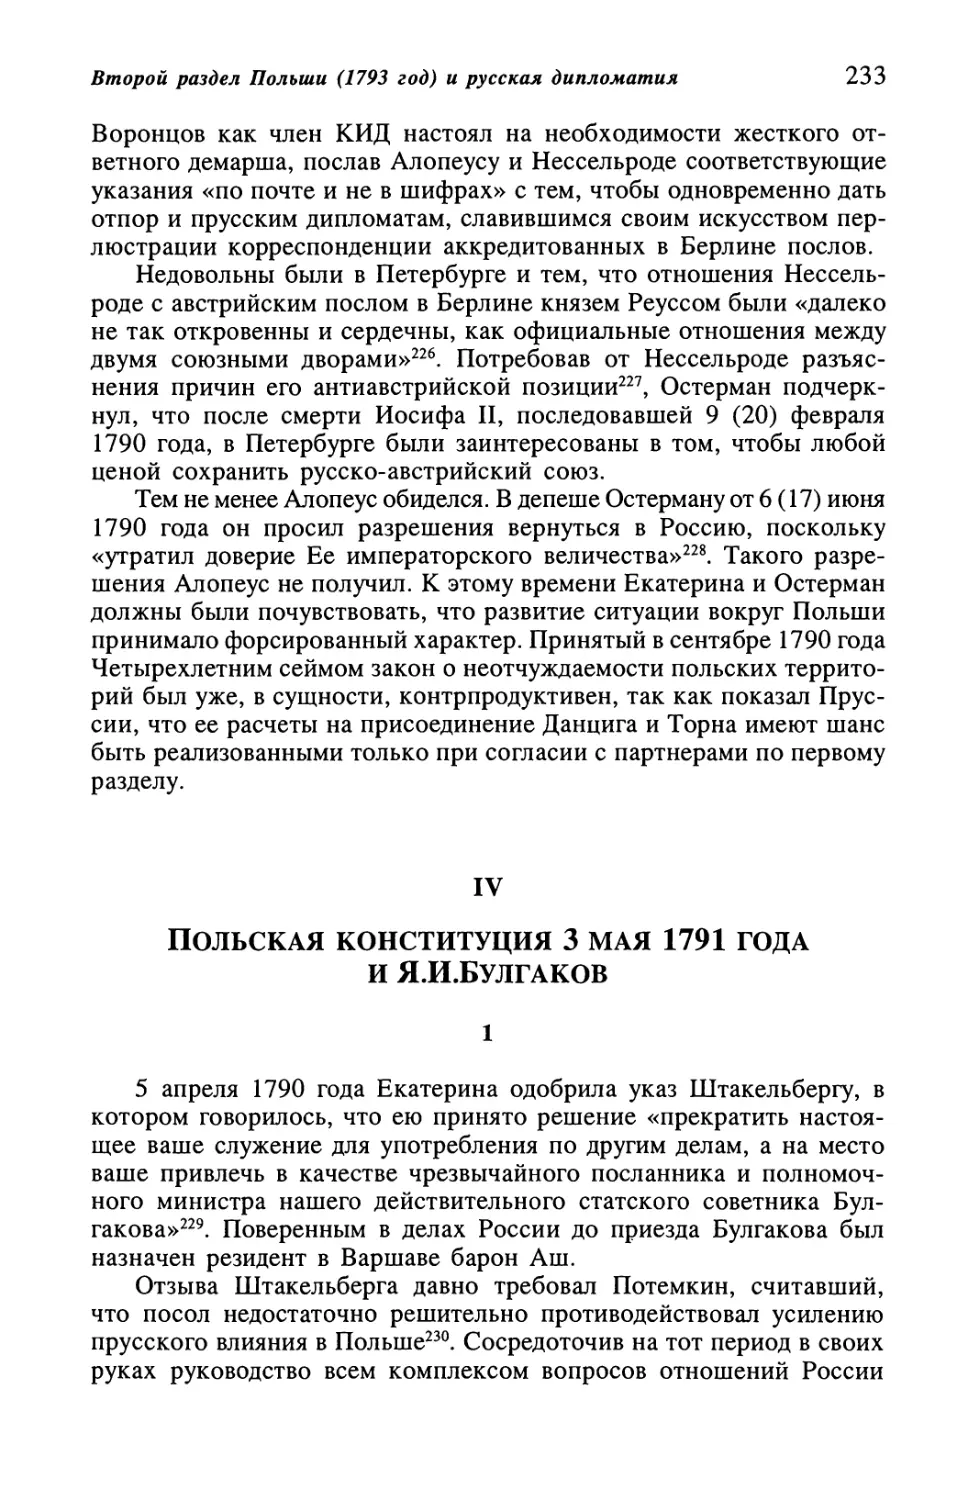 IV. Польская конституция 3 мая 1791 года и Я.И.Булгаков